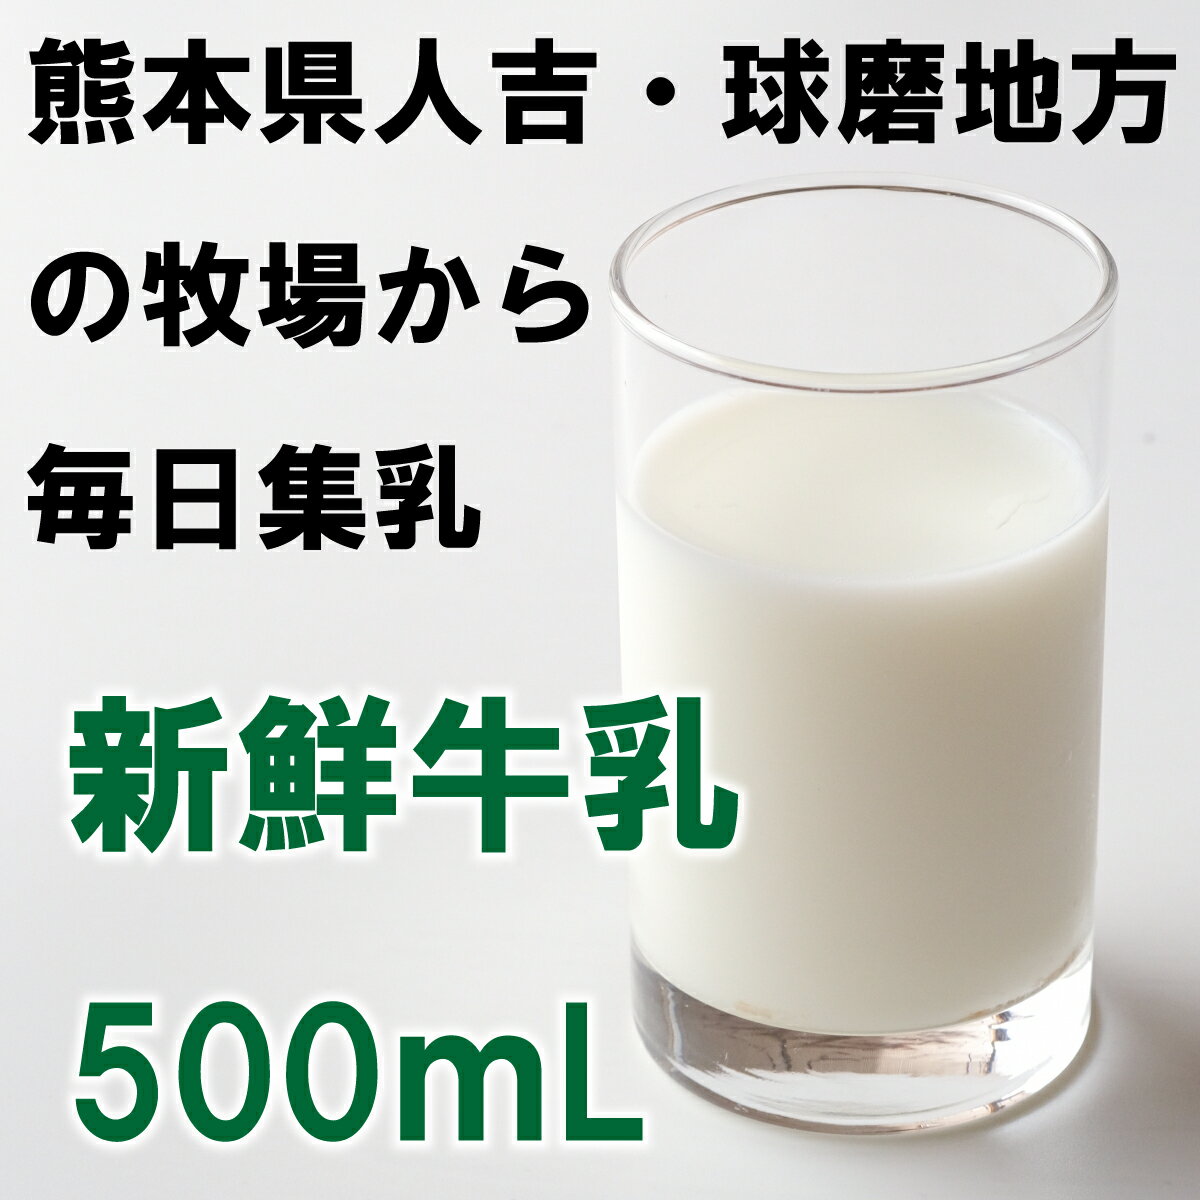 【球磨酪農牛乳500mL】熊本県 人吉市 球磨...の紹介画像3